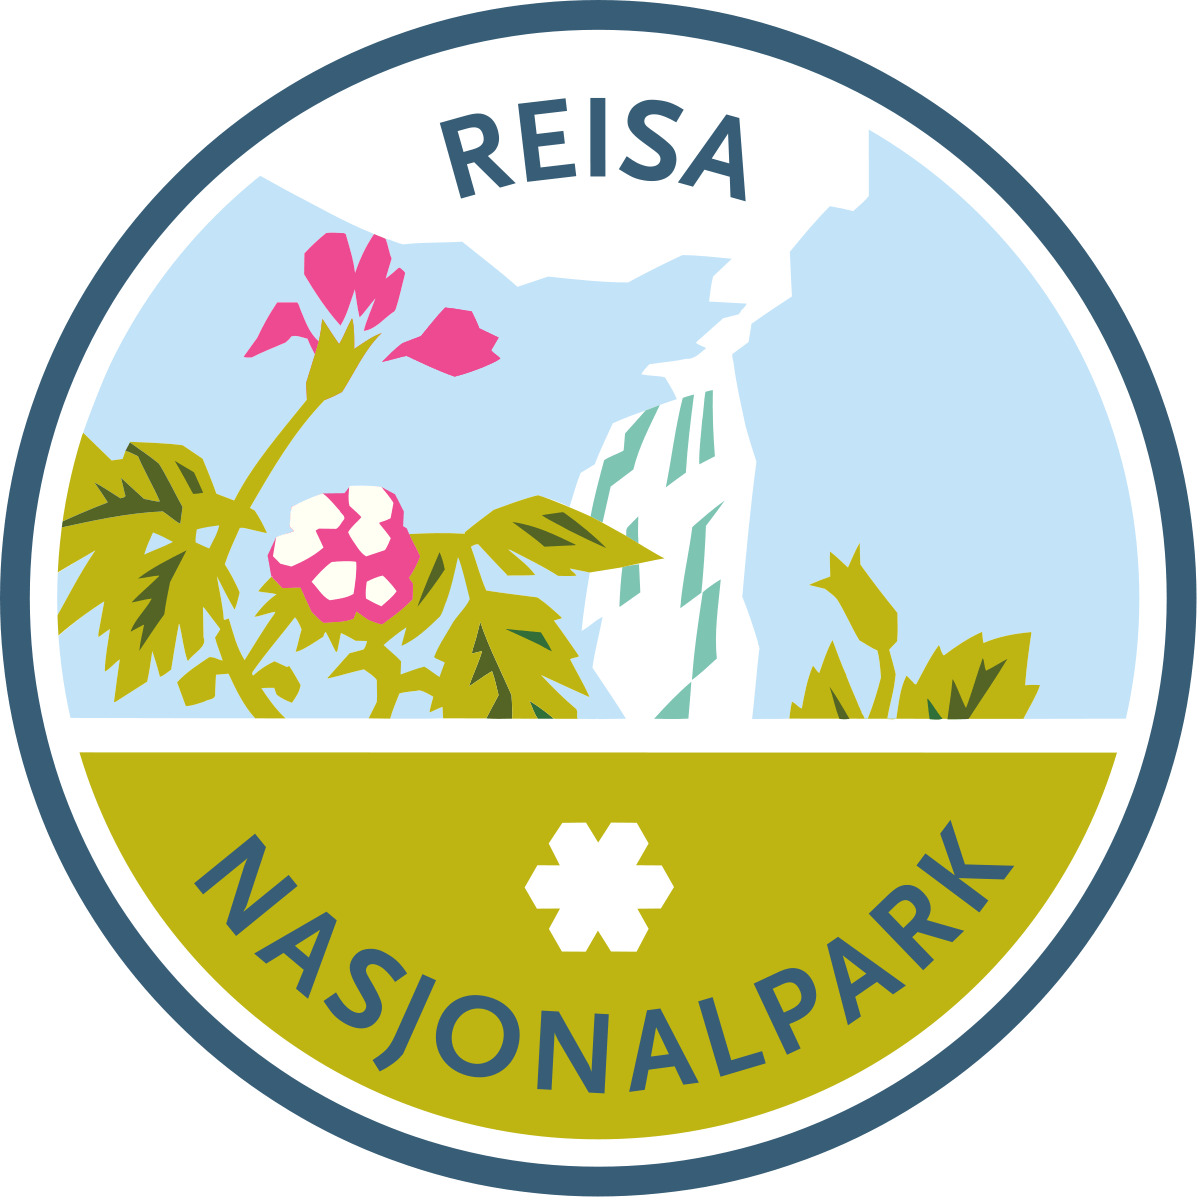 Reisa Nasjonalpark icons